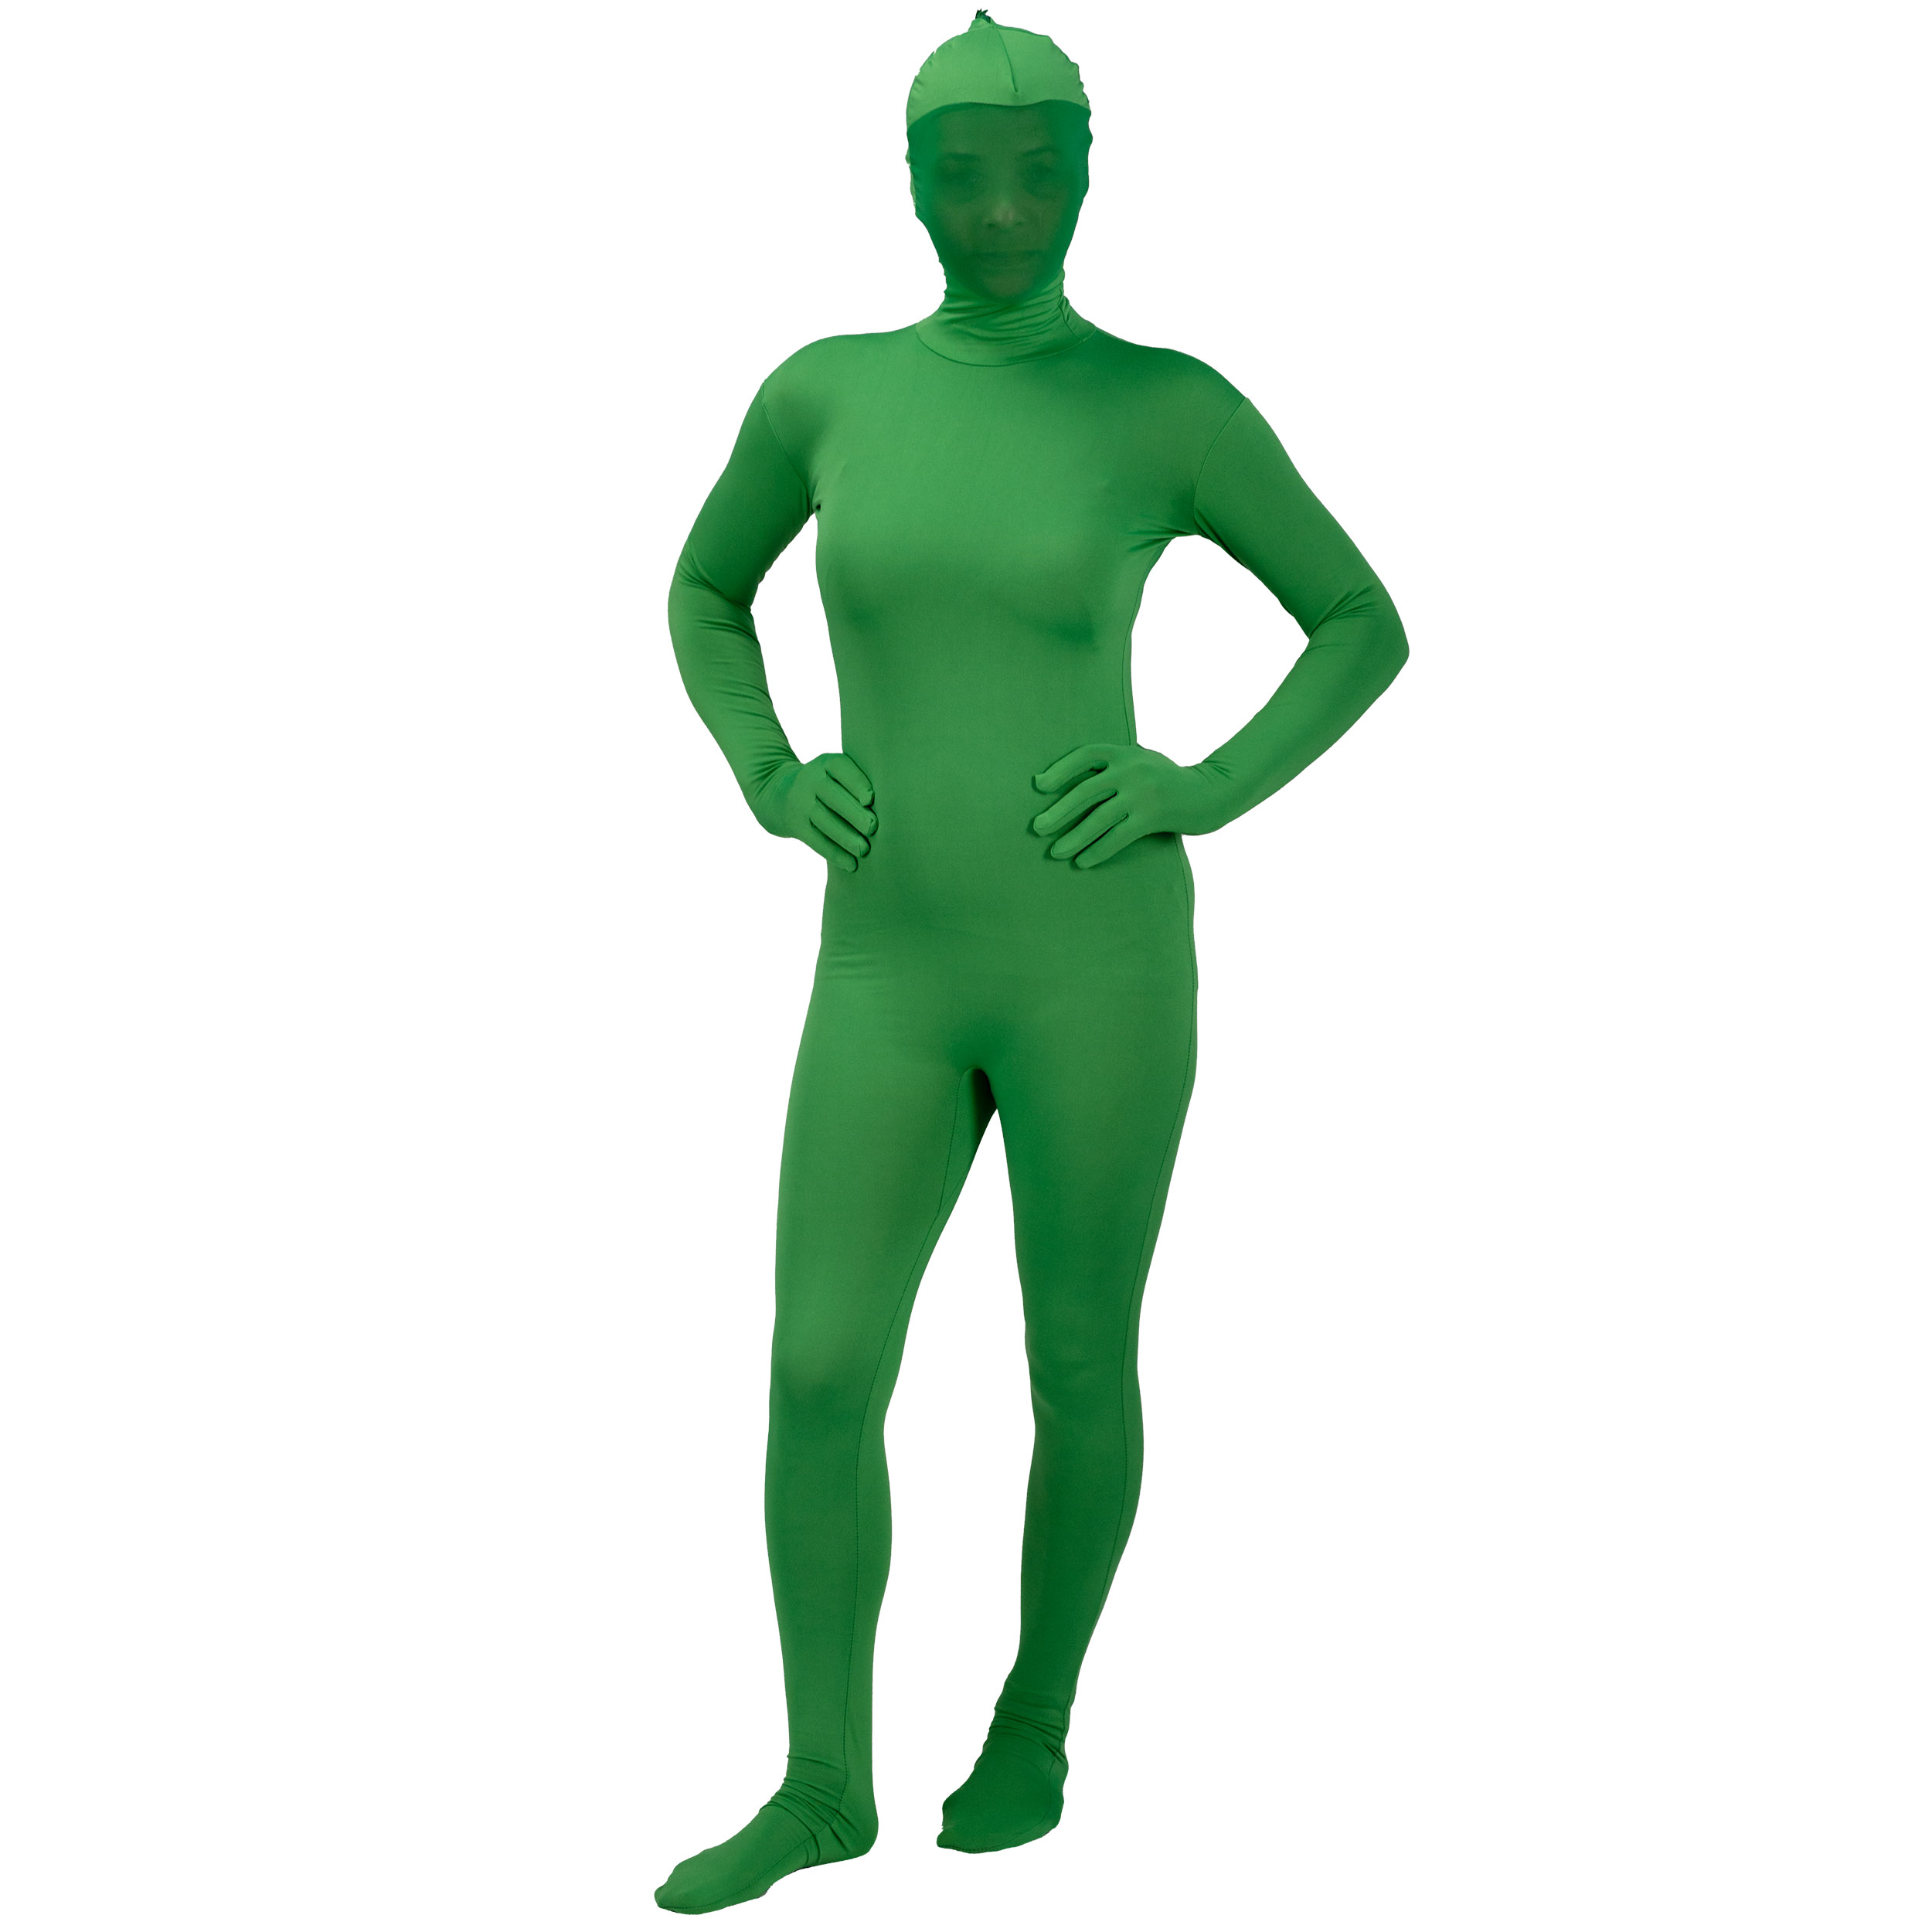 BRESSER Chromakey Green Full Body Suit XL